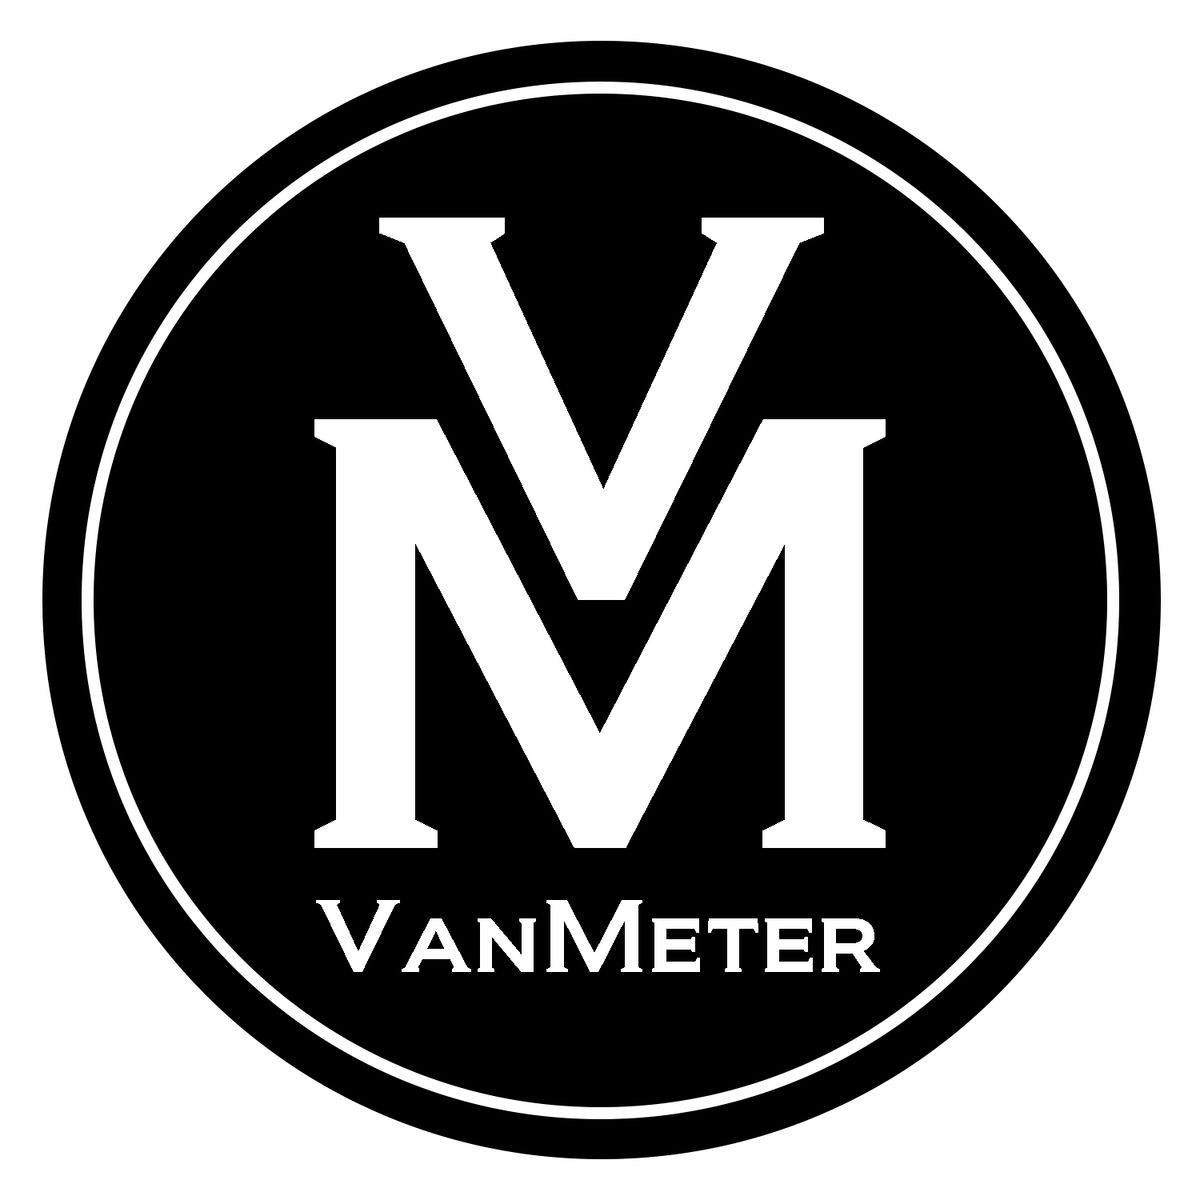 The Van Meter Trio